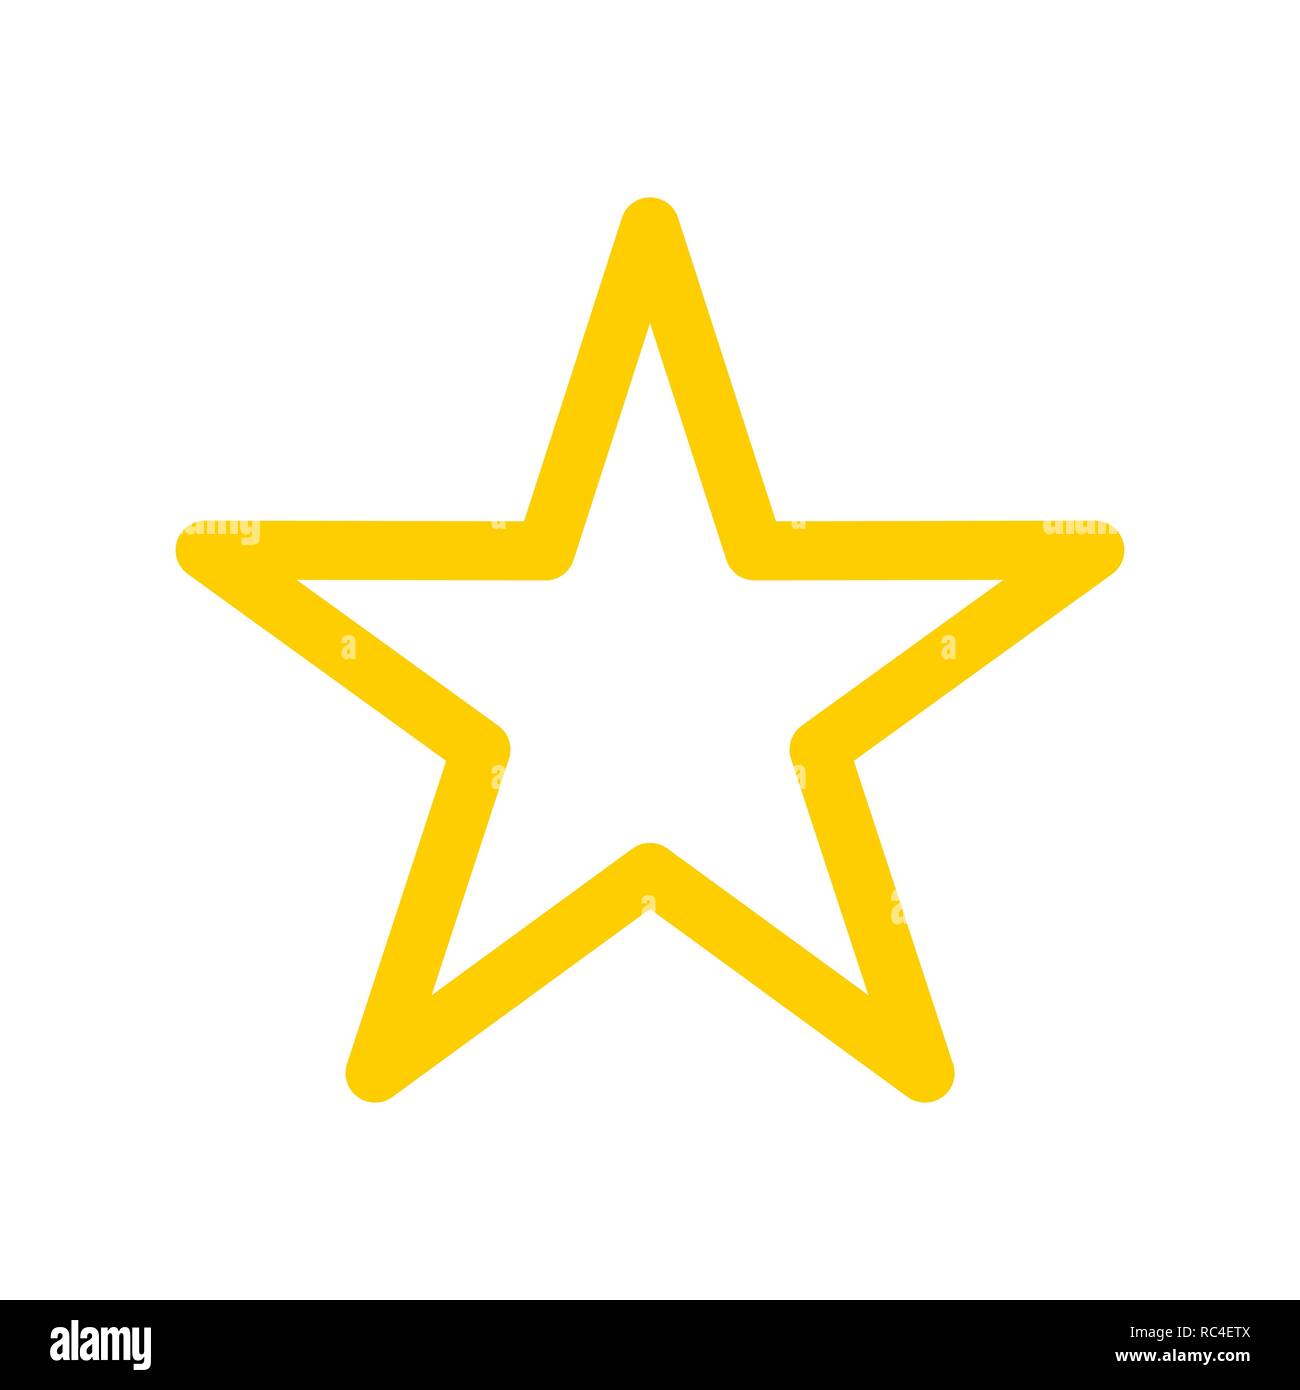 Icône en forme d'étoile modèle plat. L'icône de l'étoile jaune sur fond blanc. Vector illustration. Illustration de Vecteur